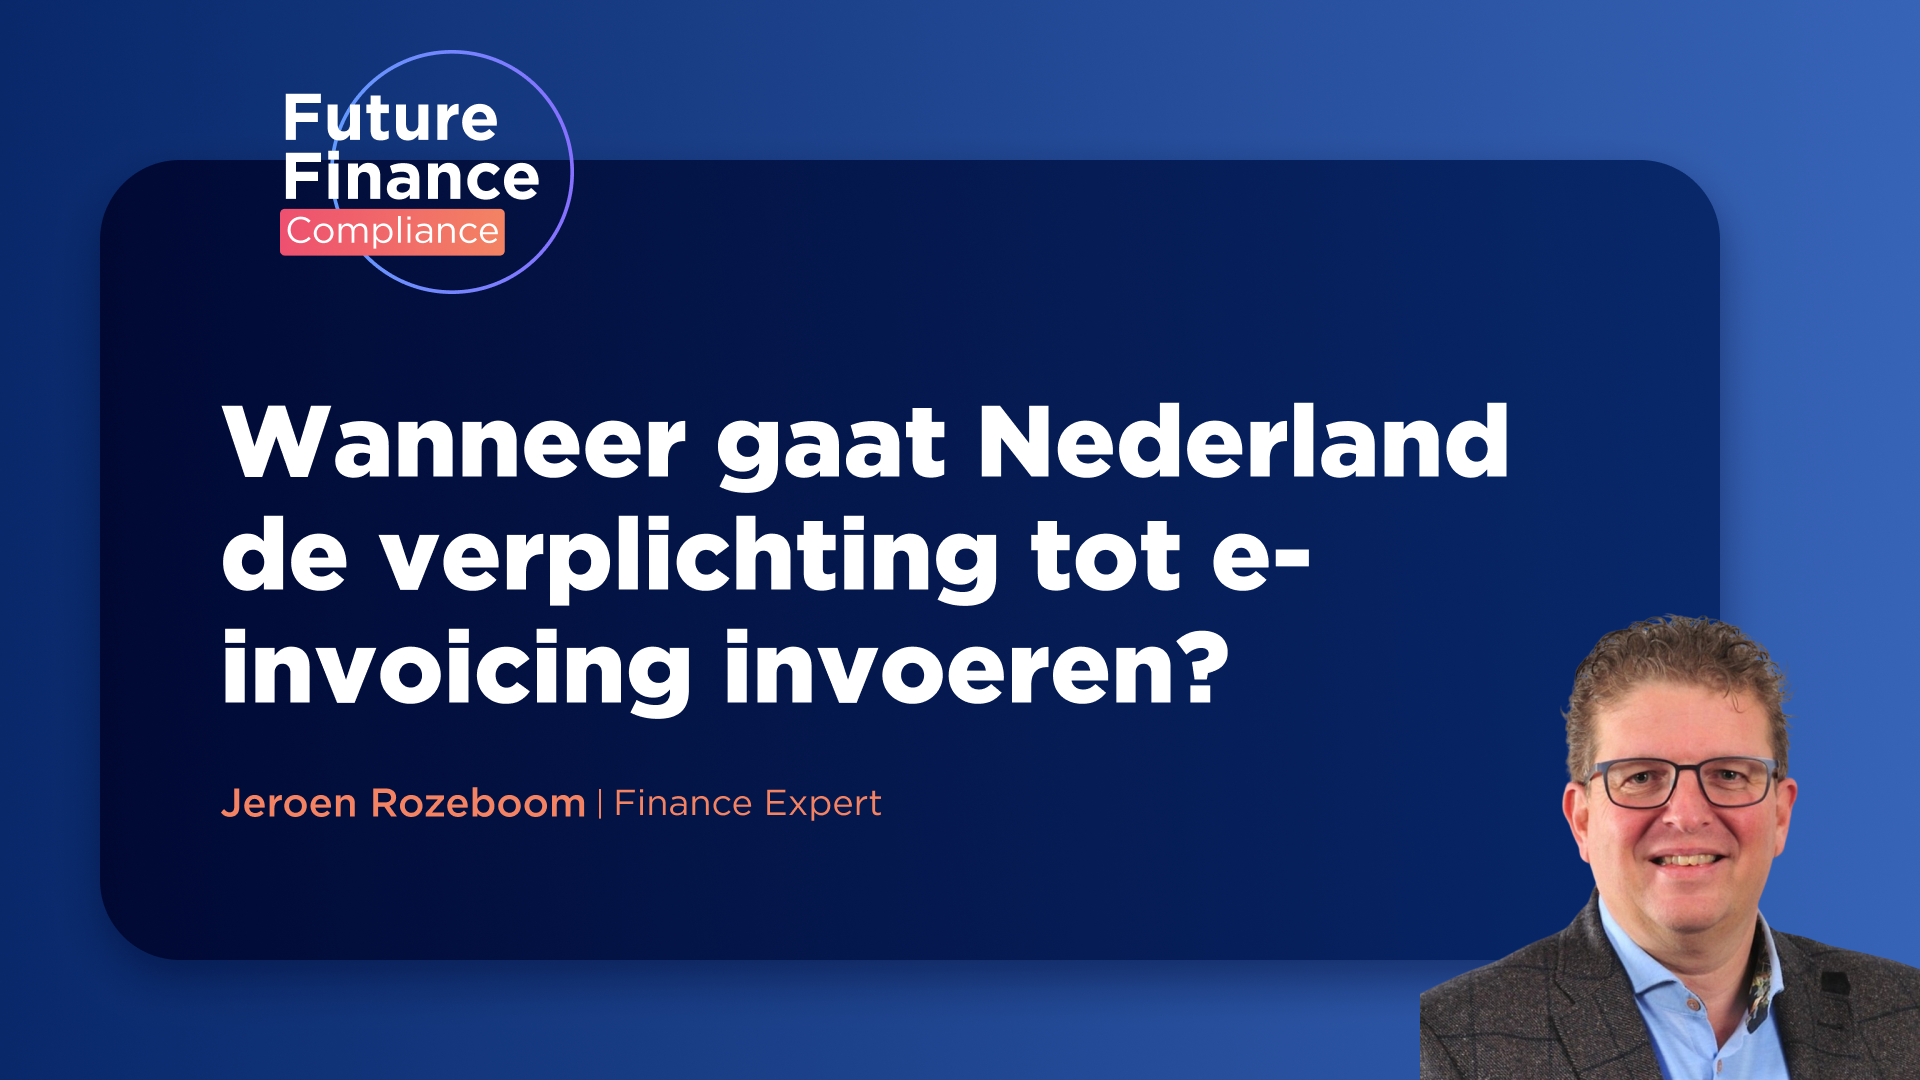 Het wachten op e-invoicing: Een analyse van de Nederlandse situatie